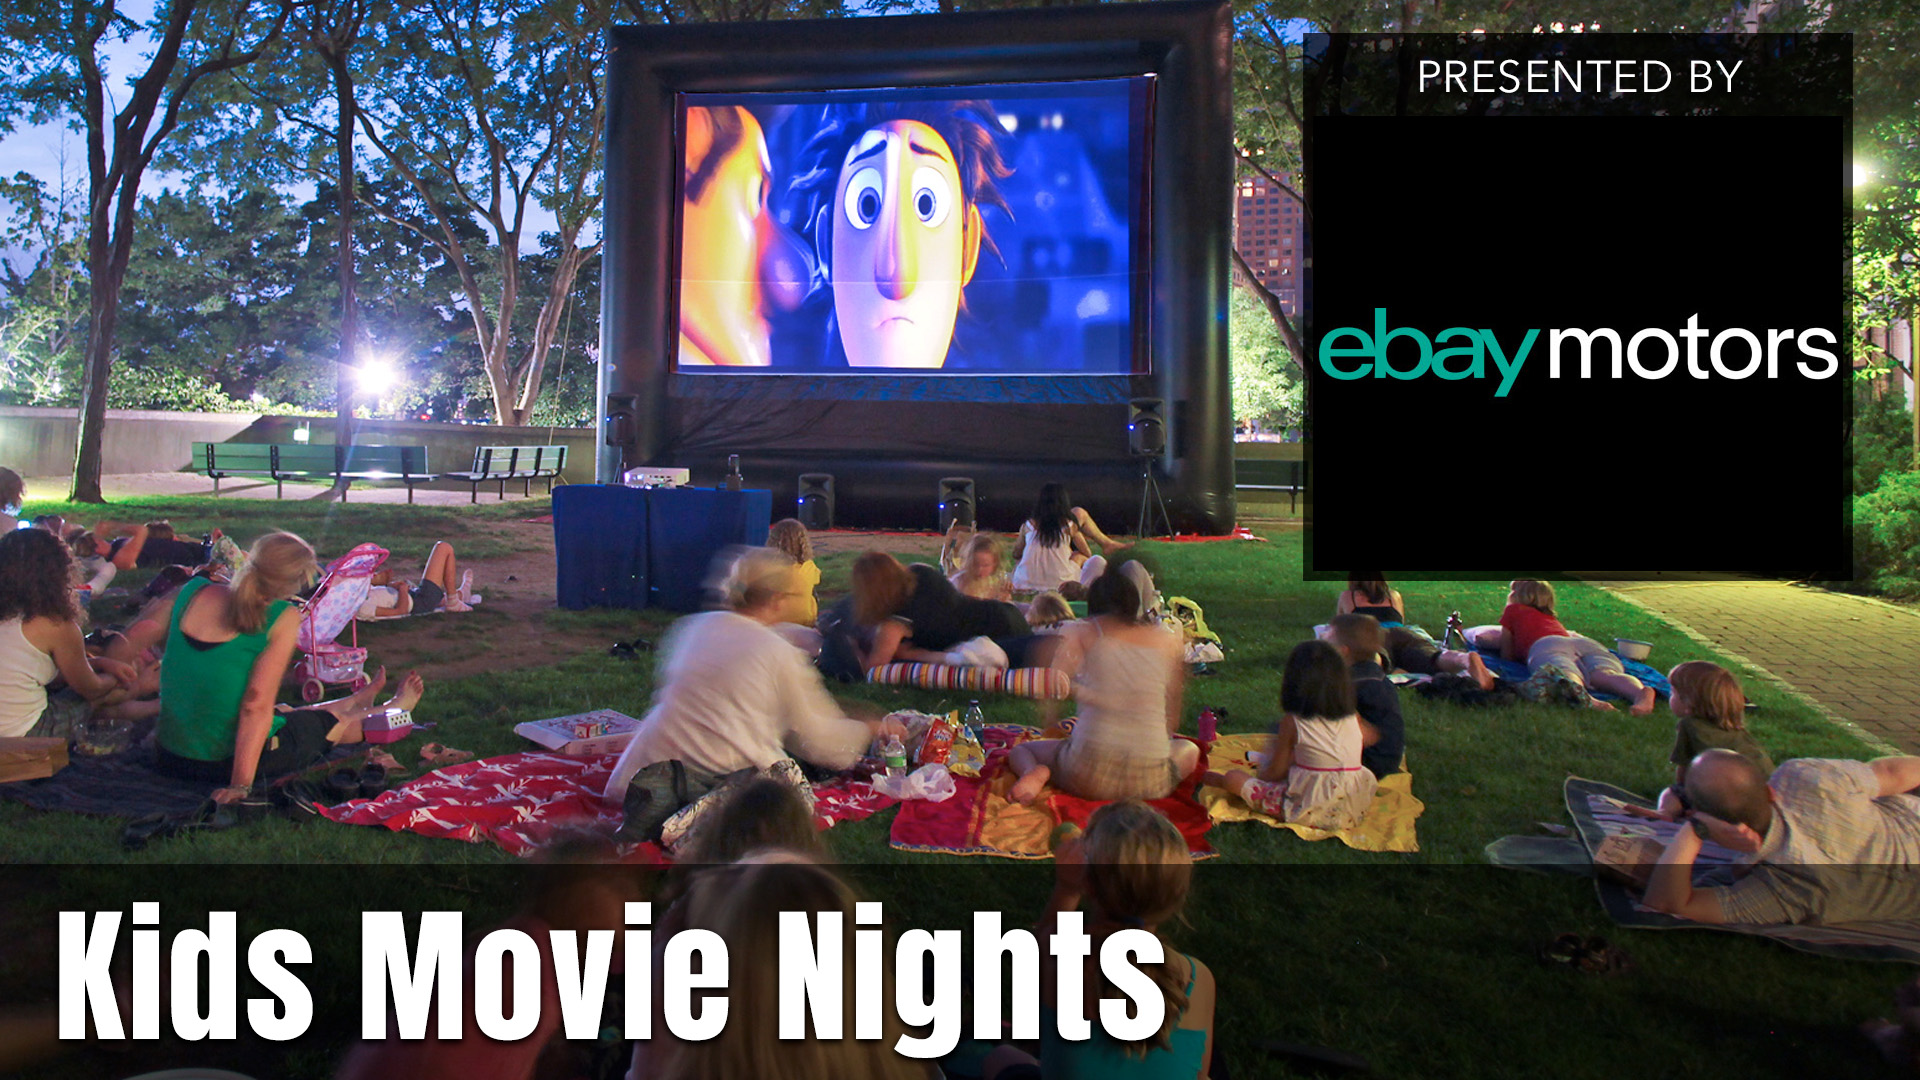 Kids Movie Night presented by Ebay Motors